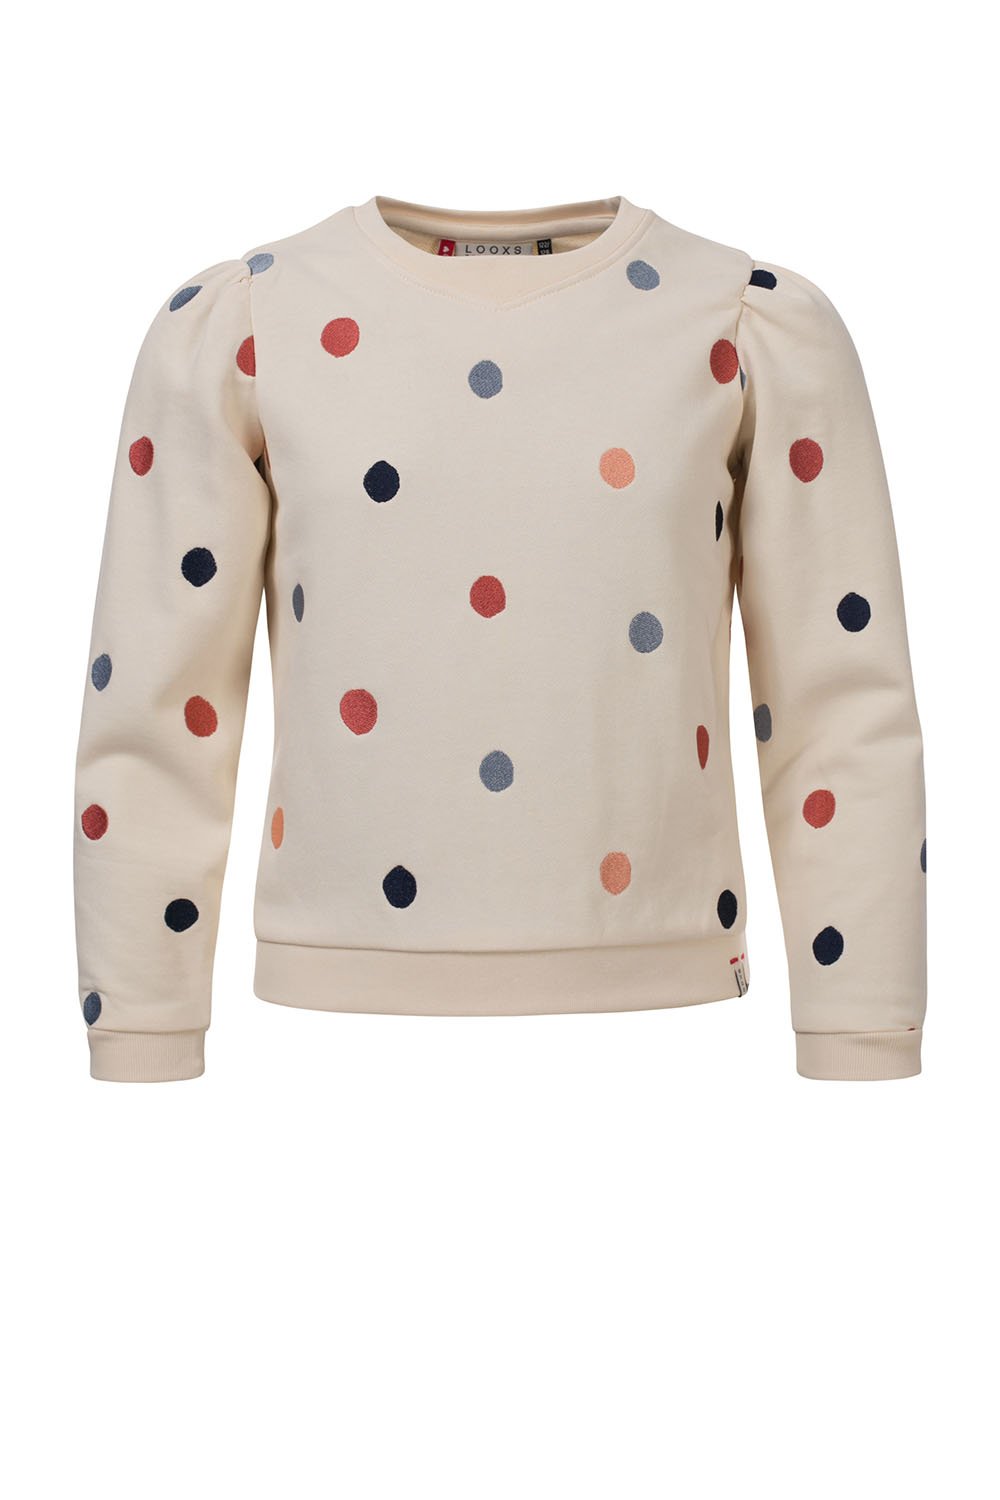 Meisjes Little embroidered sweater van LOOXS Little in de kleur MILK in maat 128.